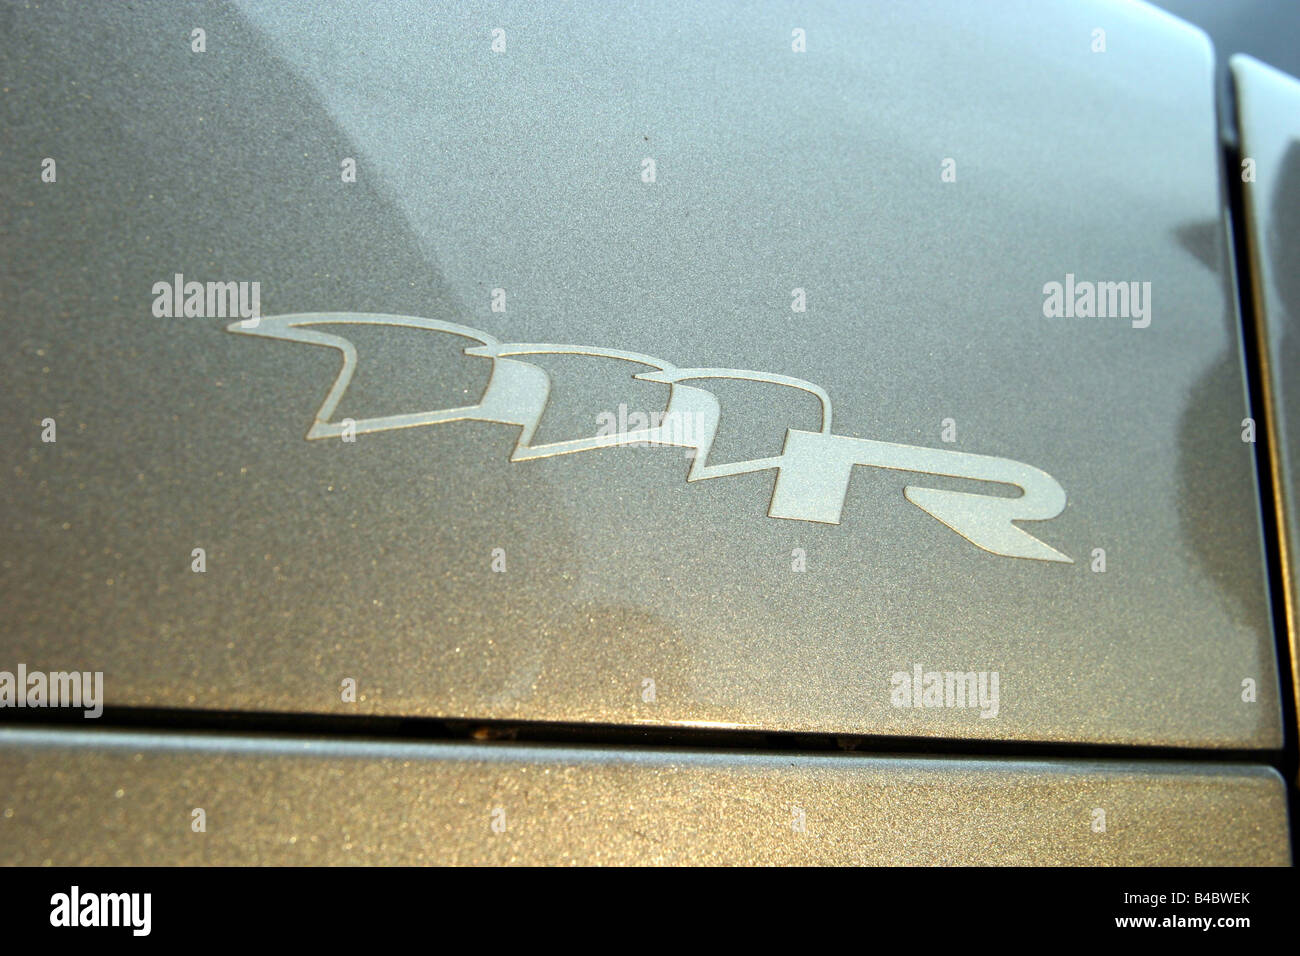 Lotus Elise 111 R, Cabrio, Auto, Modelljahr 2004, detaillierte Ansicht, Modellbezeichnung, Technik/Zubehör, Zubehör, Fotograf Stockfoto